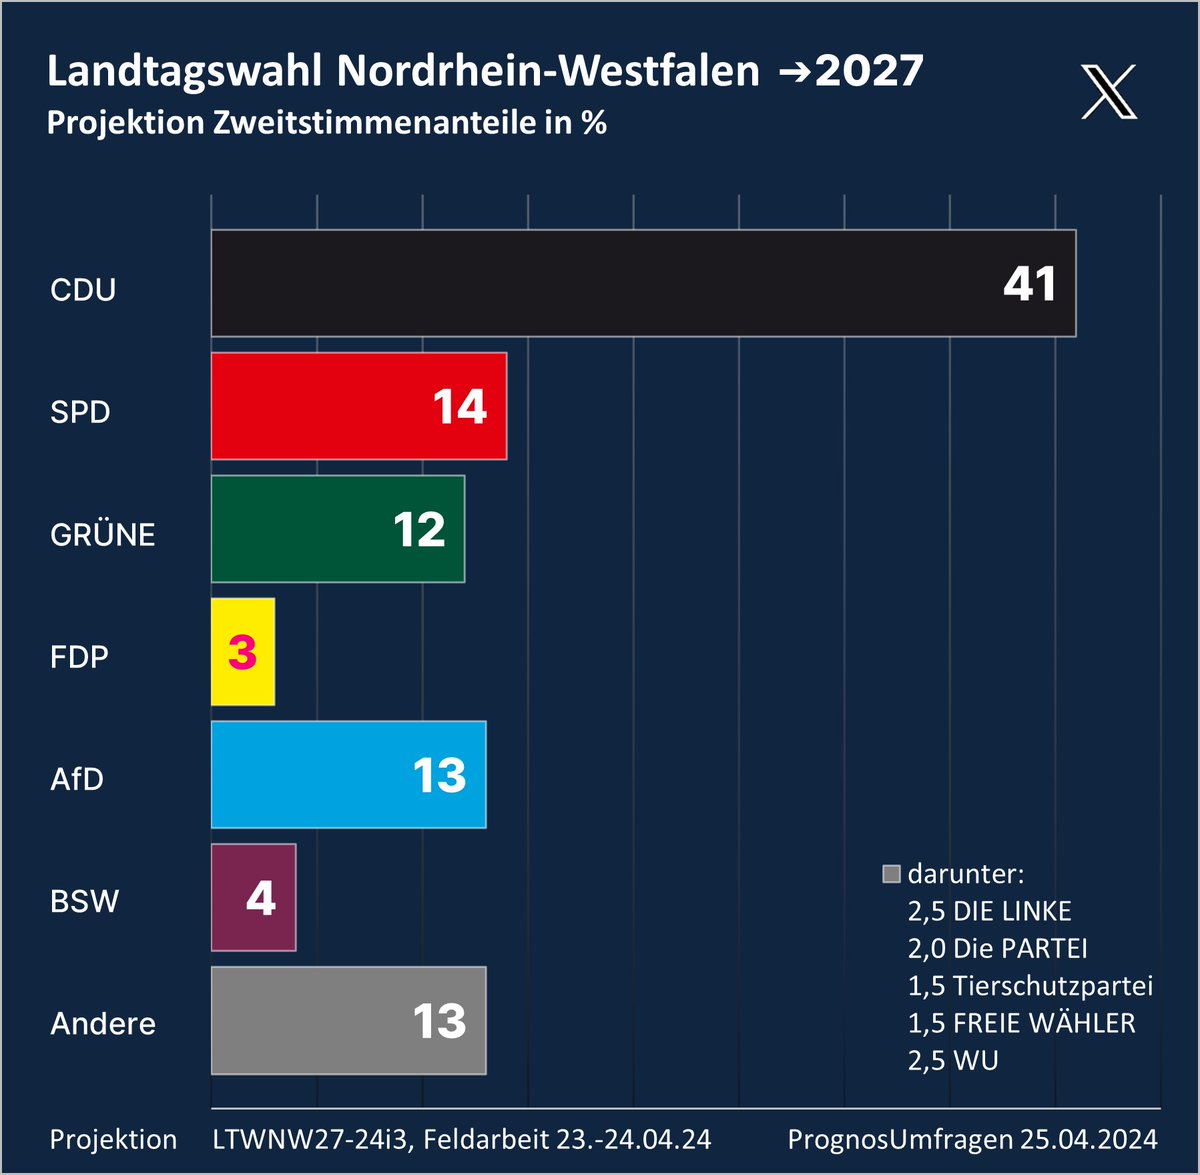 Landtagswahl Nordrhein-Westfalen #LTWNW #LTW27

Zugewinne für #CDU und #BSW, #GRÜNE fallen wieder hinter die #AfD: Aktuell käme die CDU unter Hendrik #Wüst in #NRW auf eine absolute Mehrheit im Landtag und könnte auf einen Koalitionspartner, derzeit GRÜNE, verzichten.